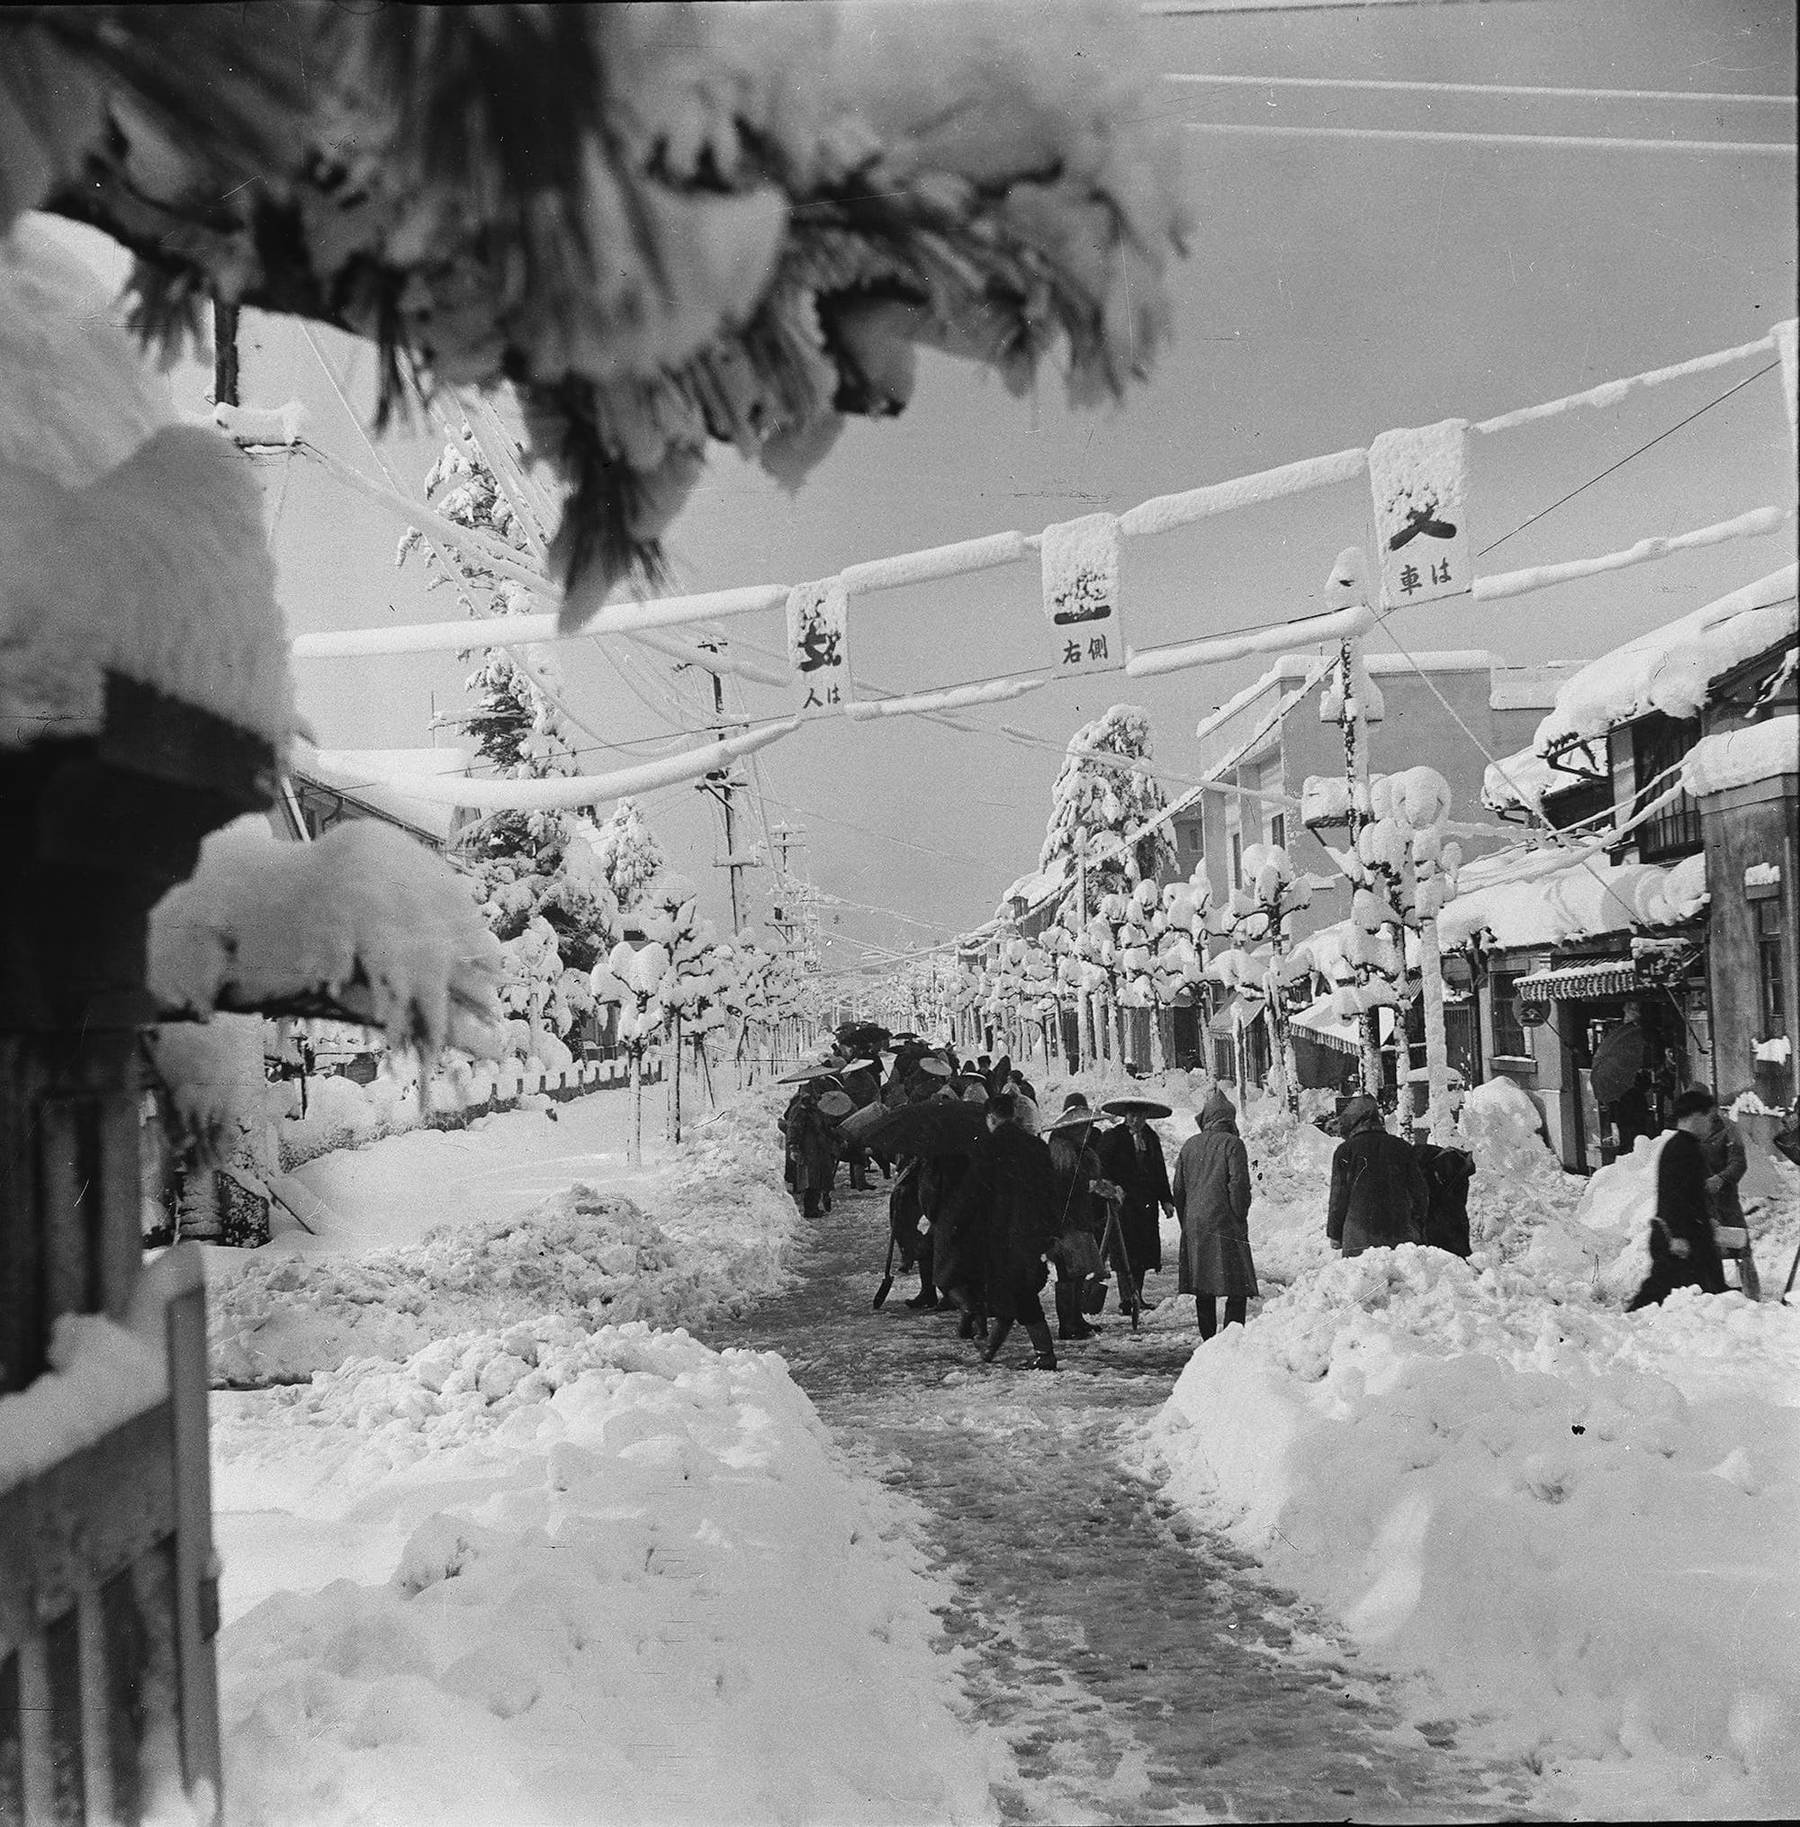 昭和29年の雪害's image 1